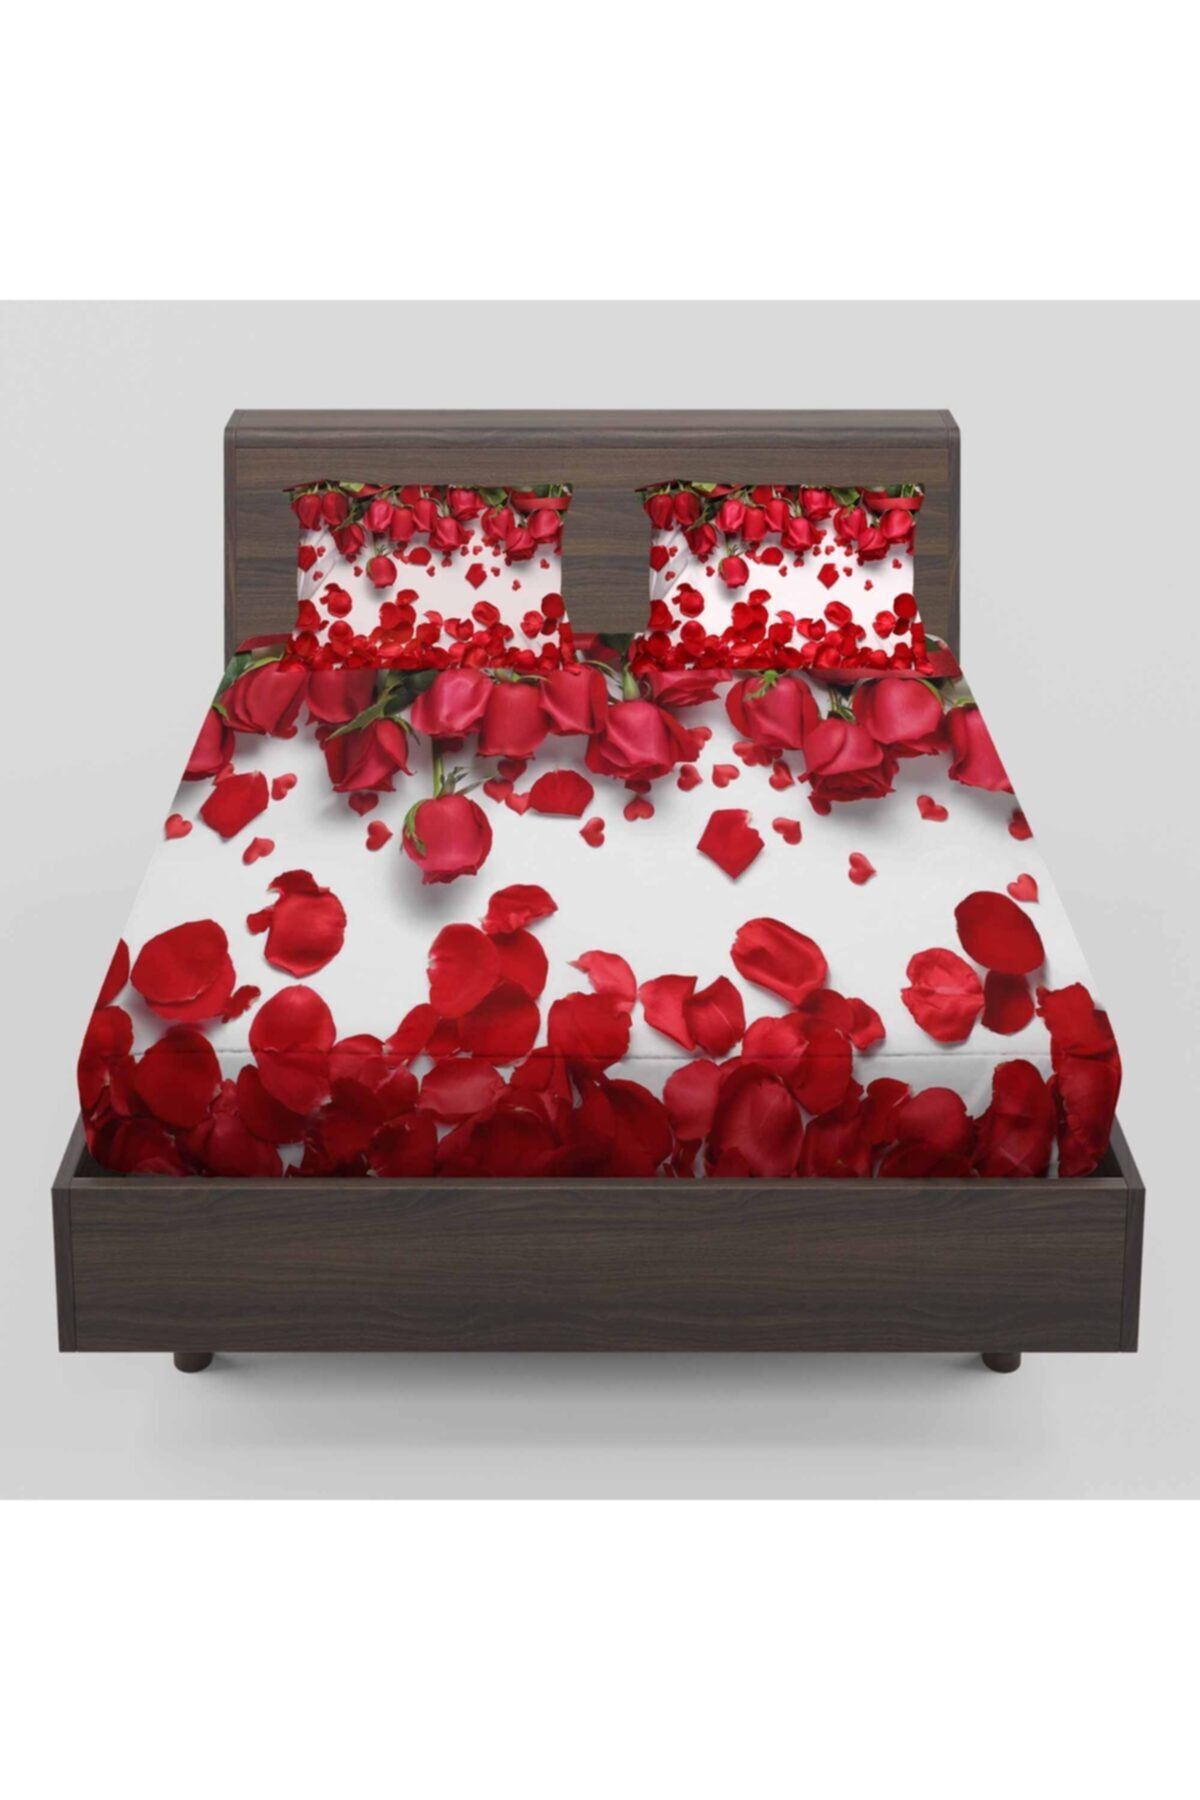 3D ELSE HALI Kırmızı Güller Yapraklar Desenli Lastikli Çift Kişilik Lastikli Çarşaf Takımı 160x200cm